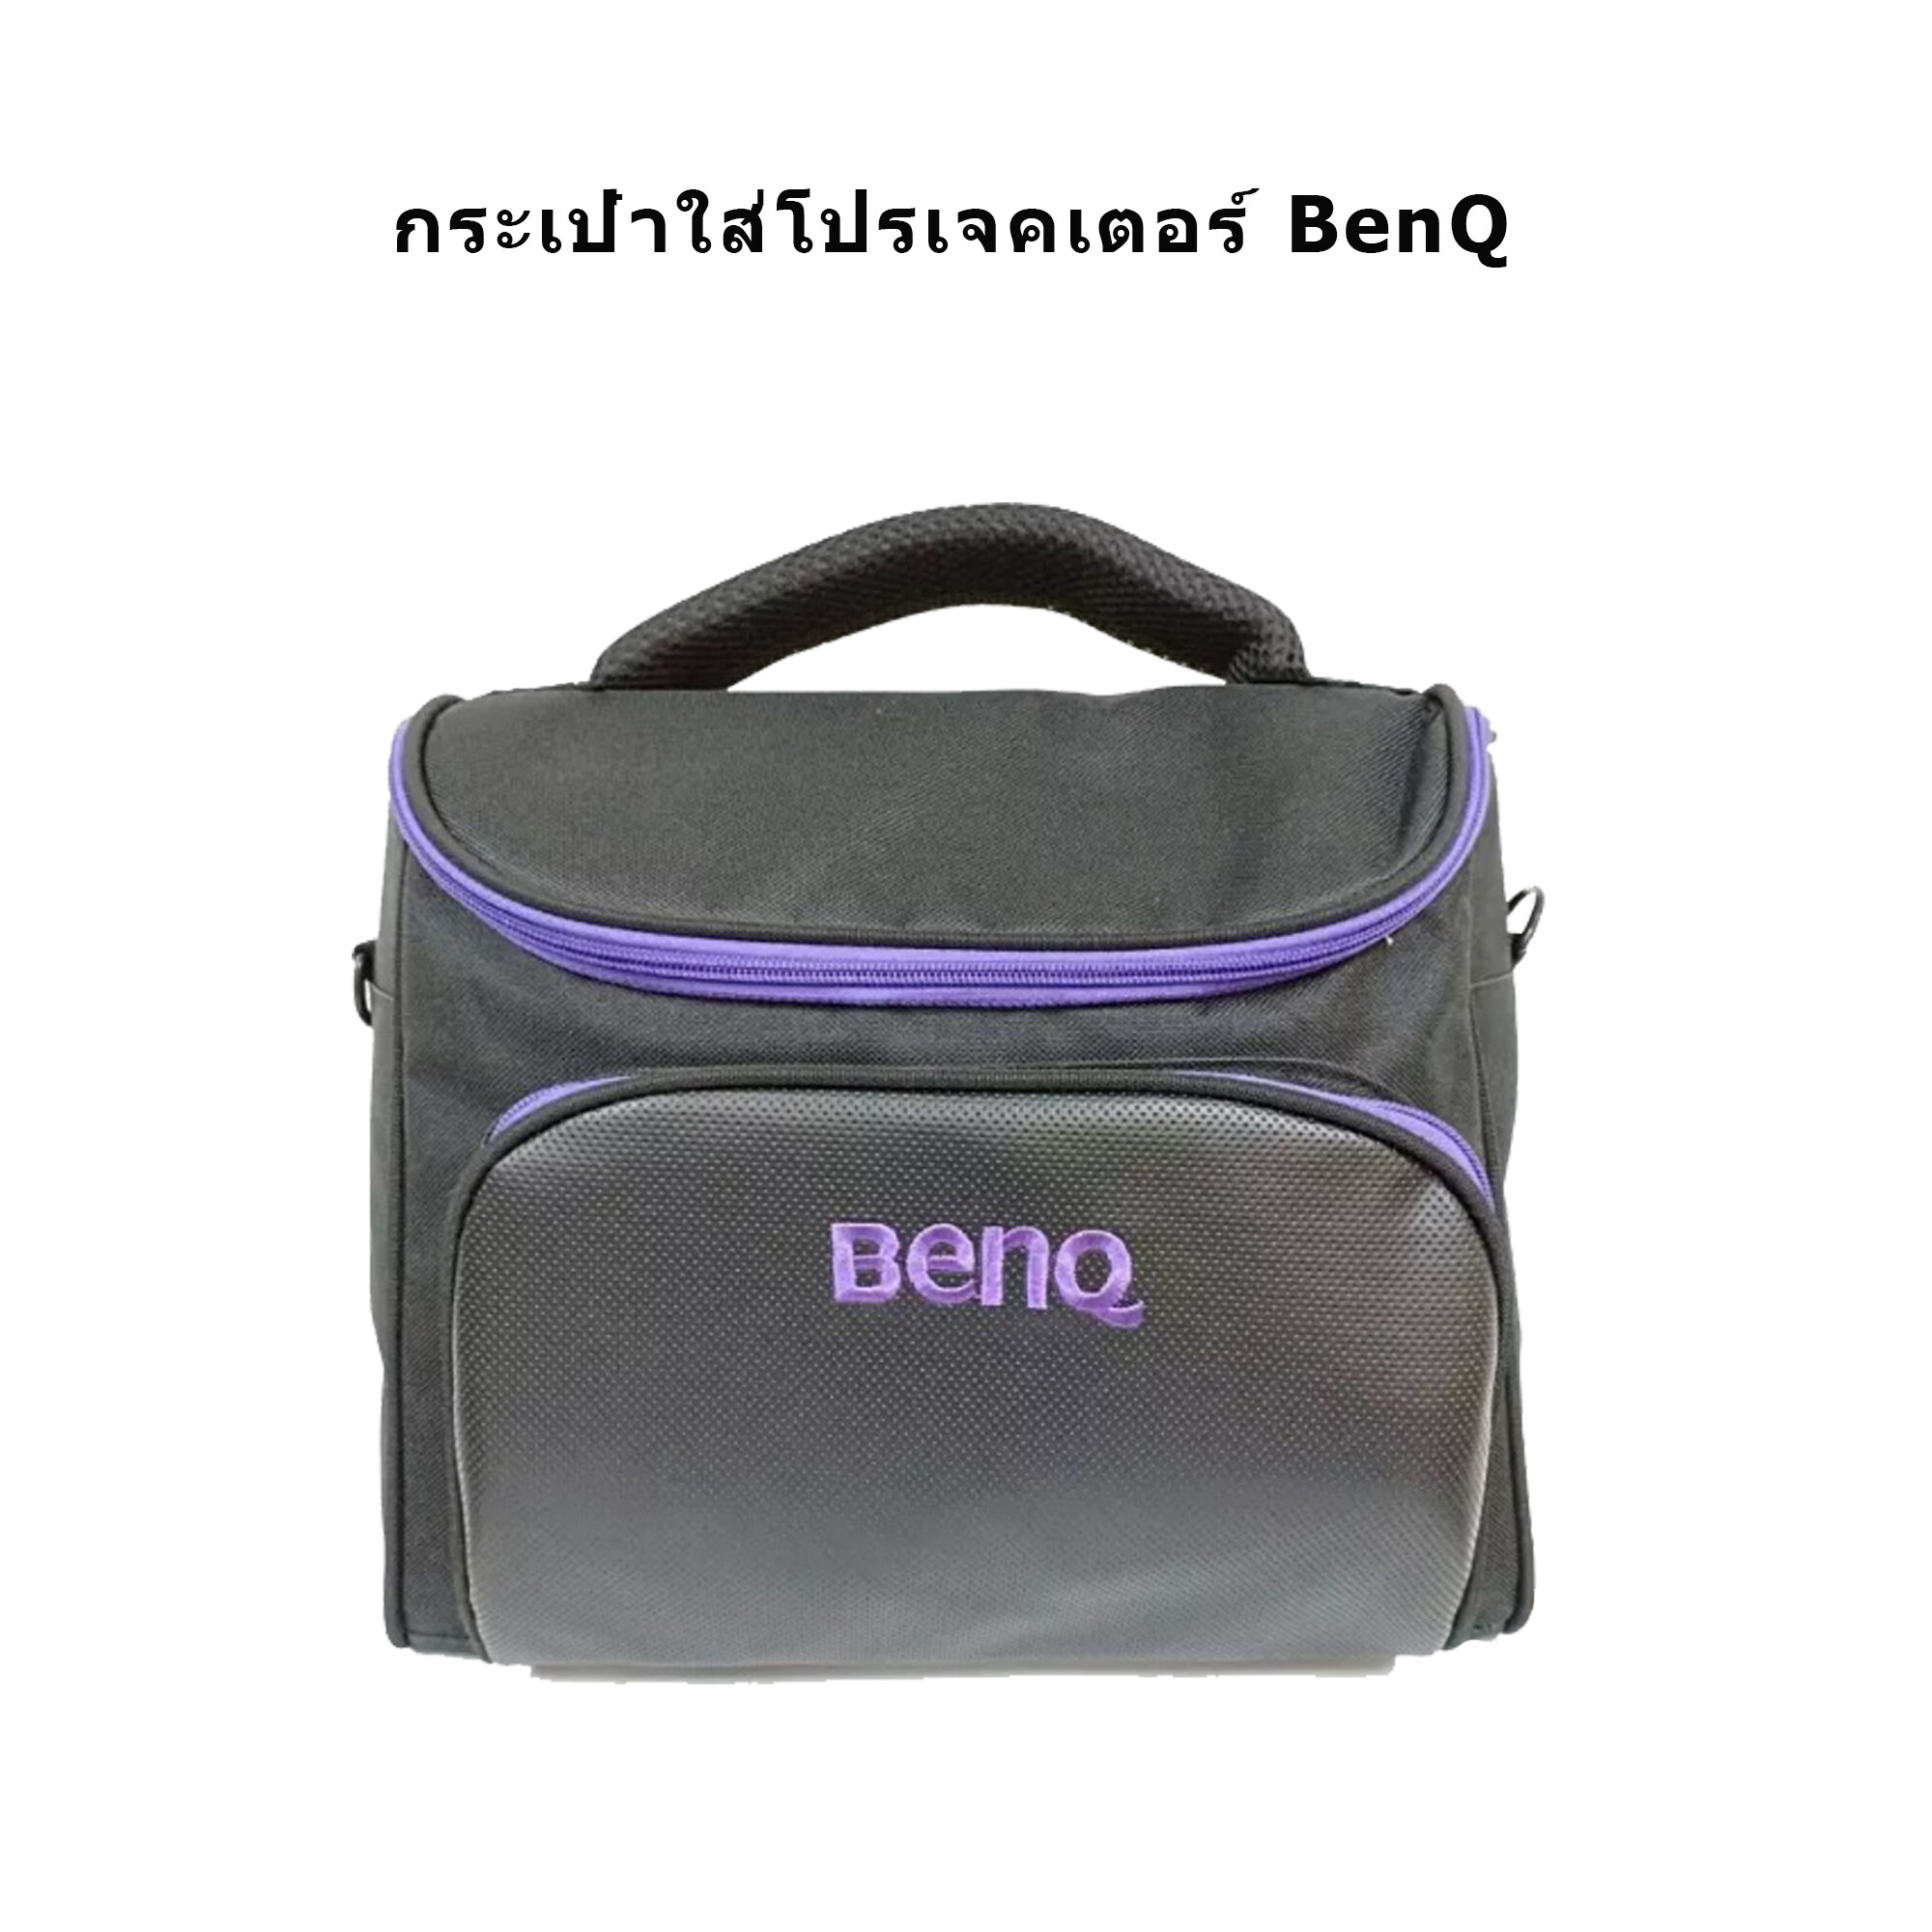 กระเป๋า projector BenQ   ขนาด 28 x 24 x 12 cm